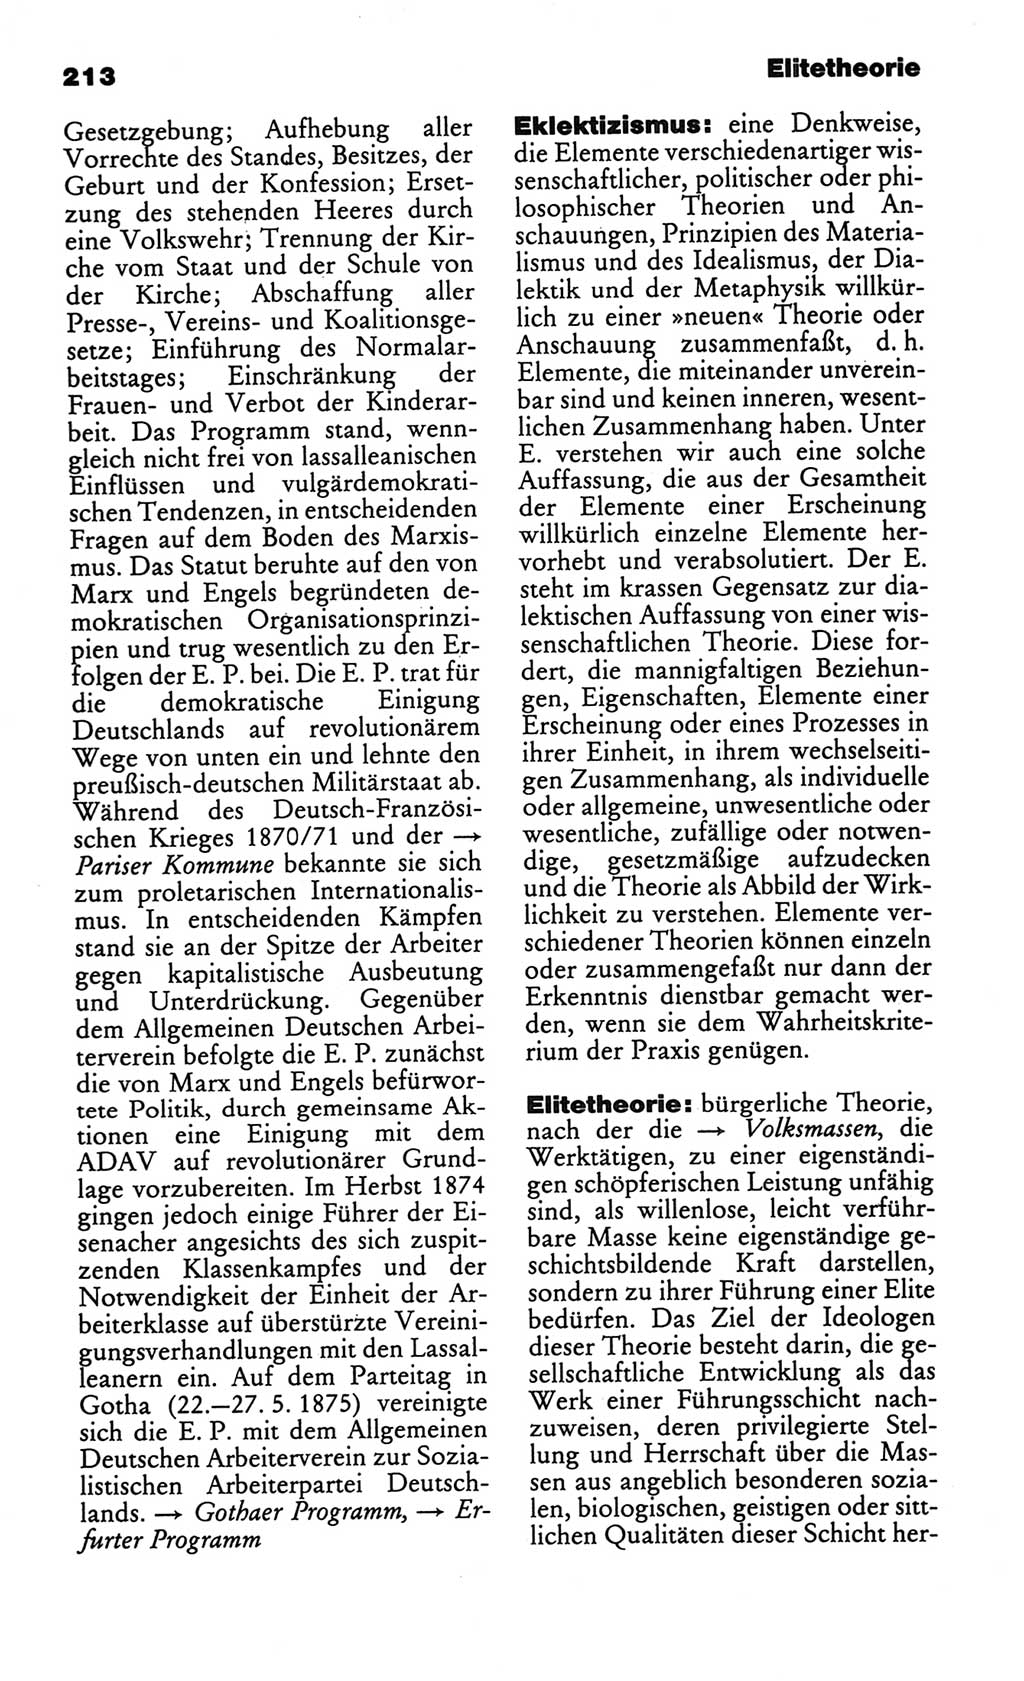 Kleines politisches Wörterbuch [Deutsche Demokratische Republik (DDR)] 1986, Seite 213 (Kl. pol. Wb. DDR 1986, S. 213)